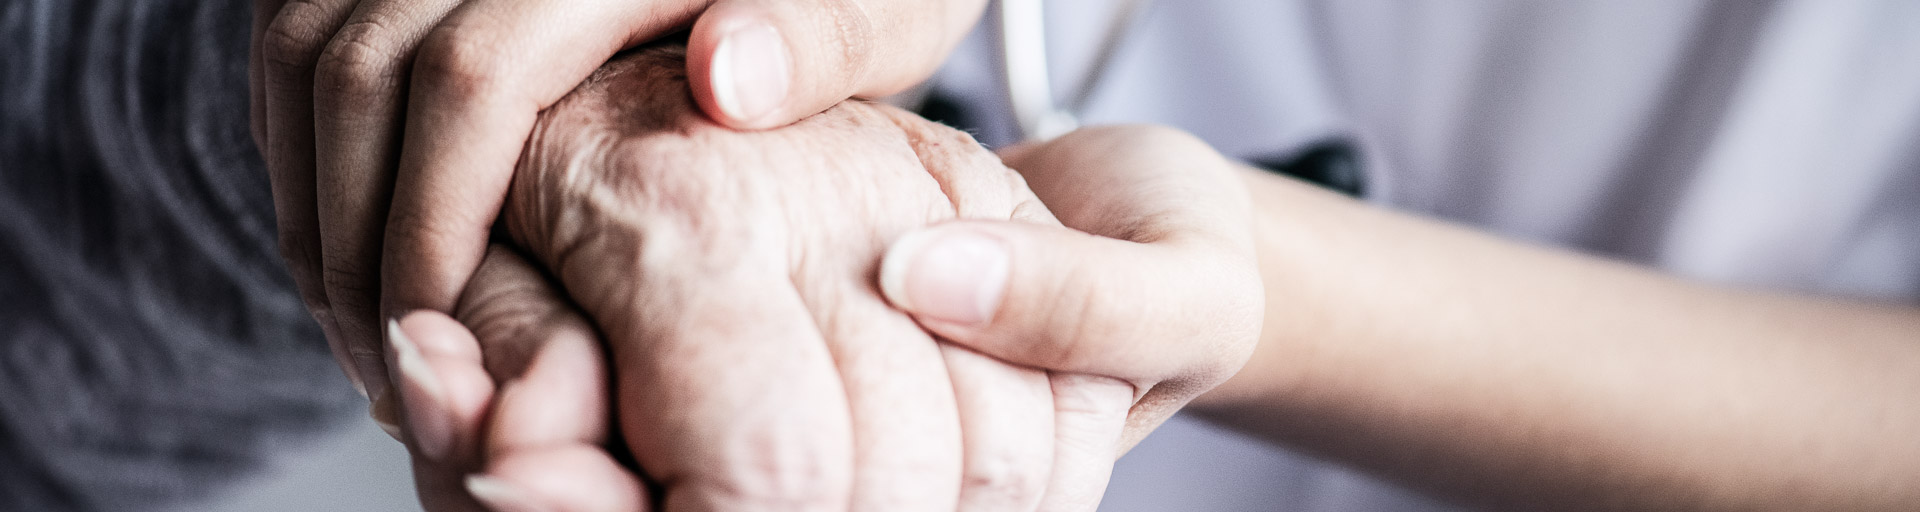 Krankenschwester hält die Hand eines älteren Patienten